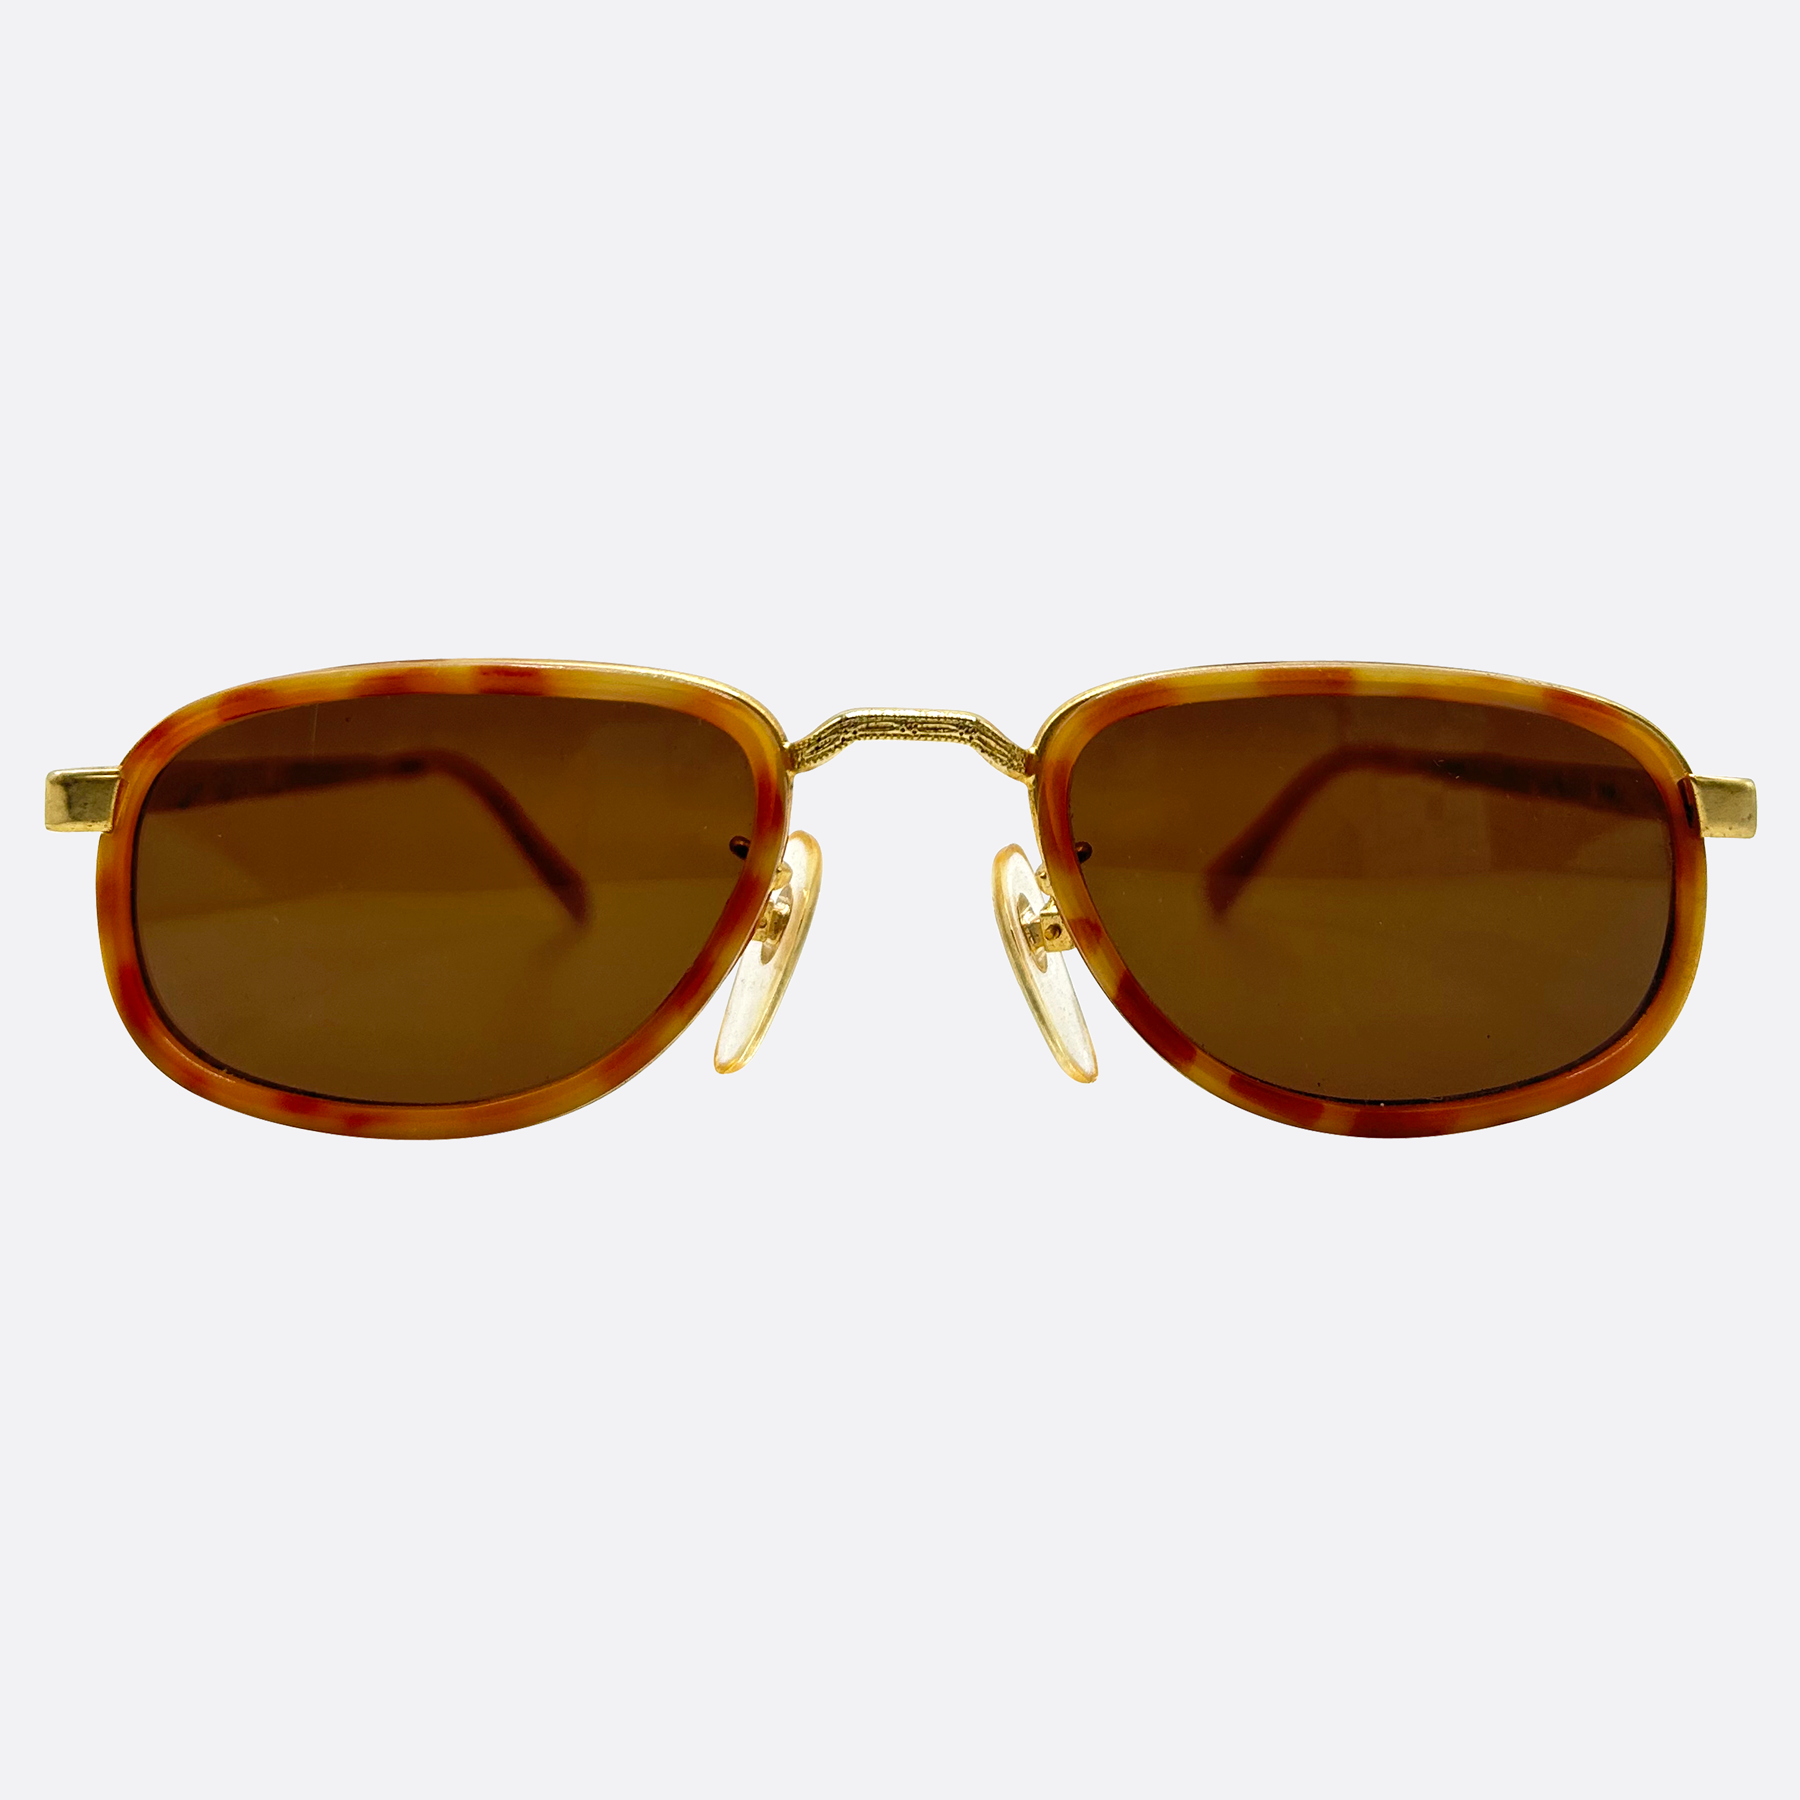 GROVER Trending 90s Sunglasses